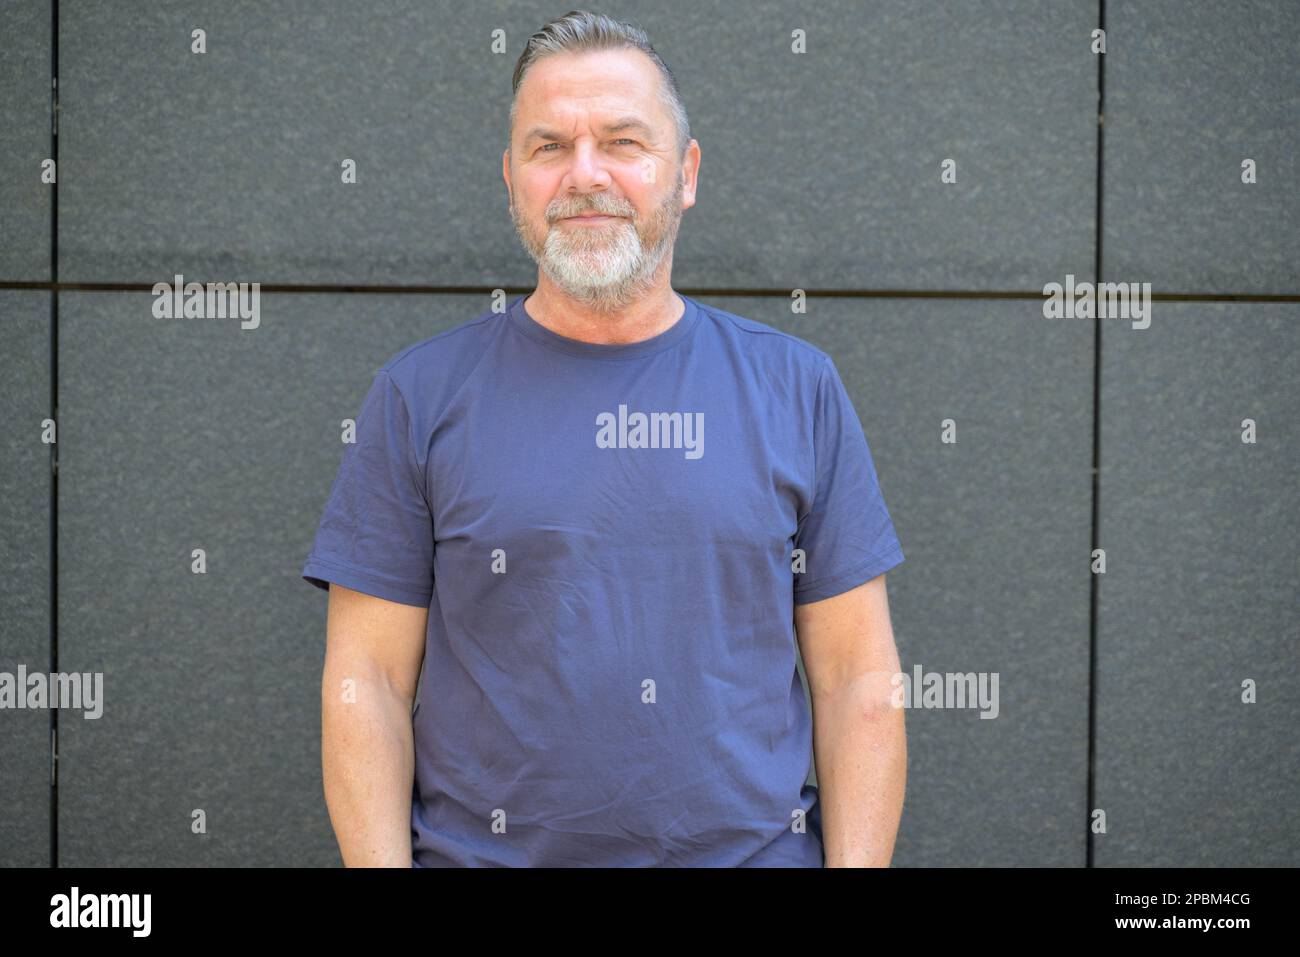 Ein bärtiger Mann mittleren Alters in einem Oberkörperporträt, der in einem Sommer-T-Shirt vor einer grauen Wand steht und in die Kamera lächelt Stockfoto